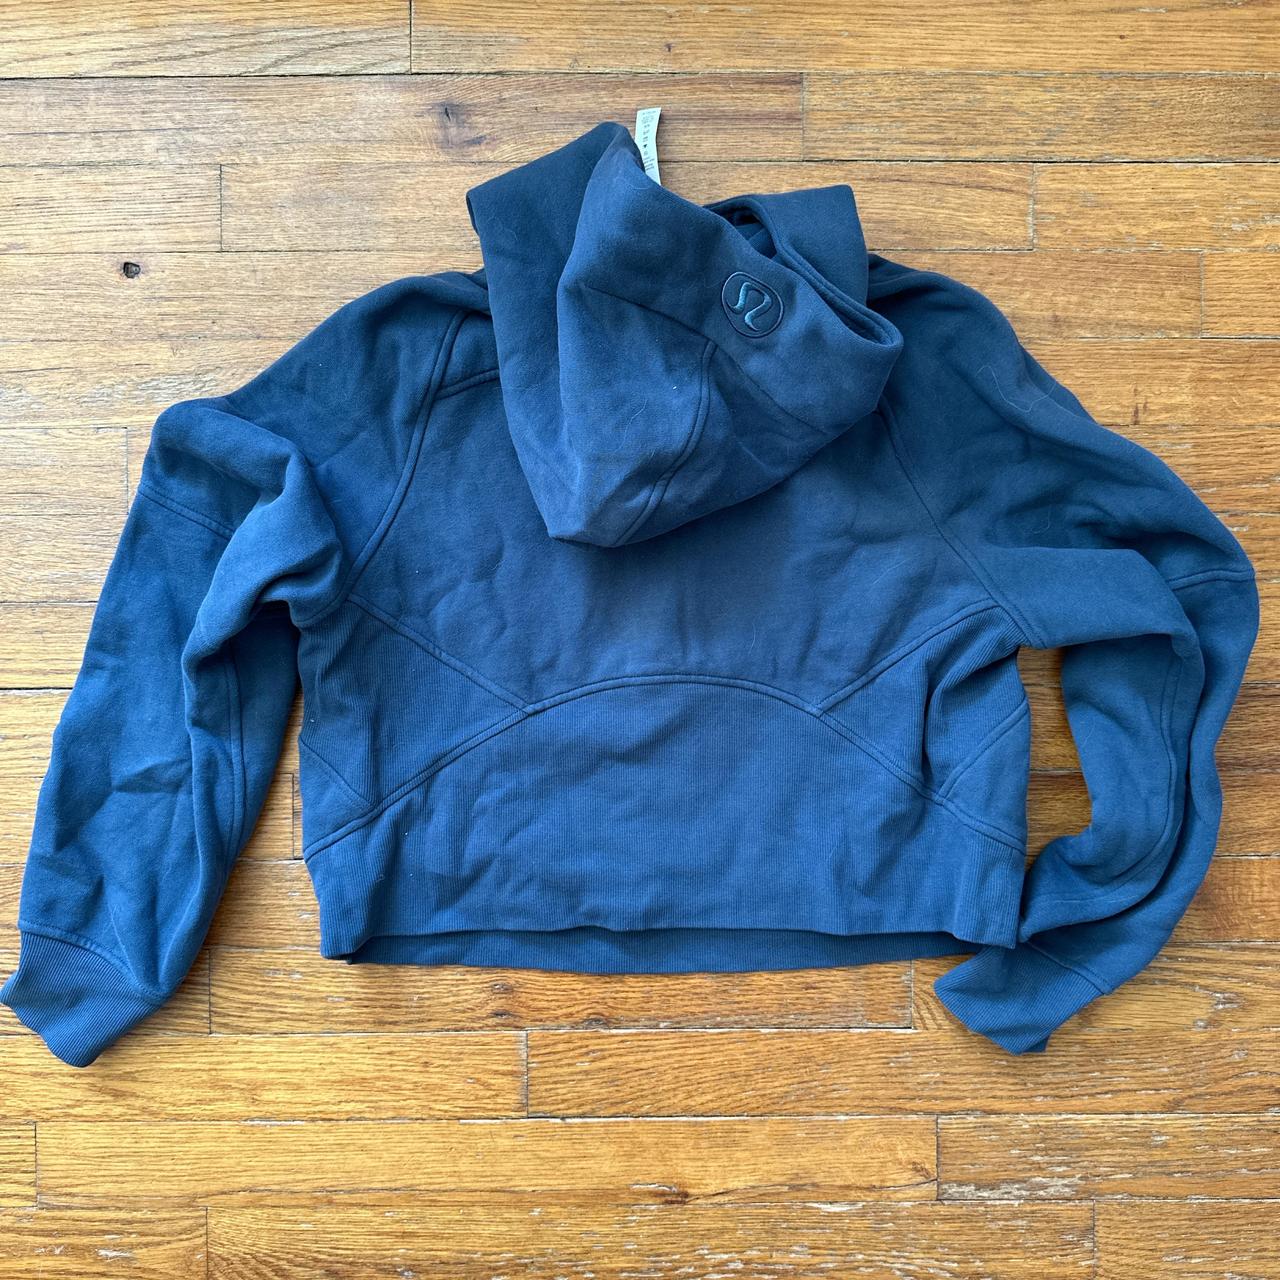 lululemon scuba half zip hoodie size xs/s slate blue - Depop